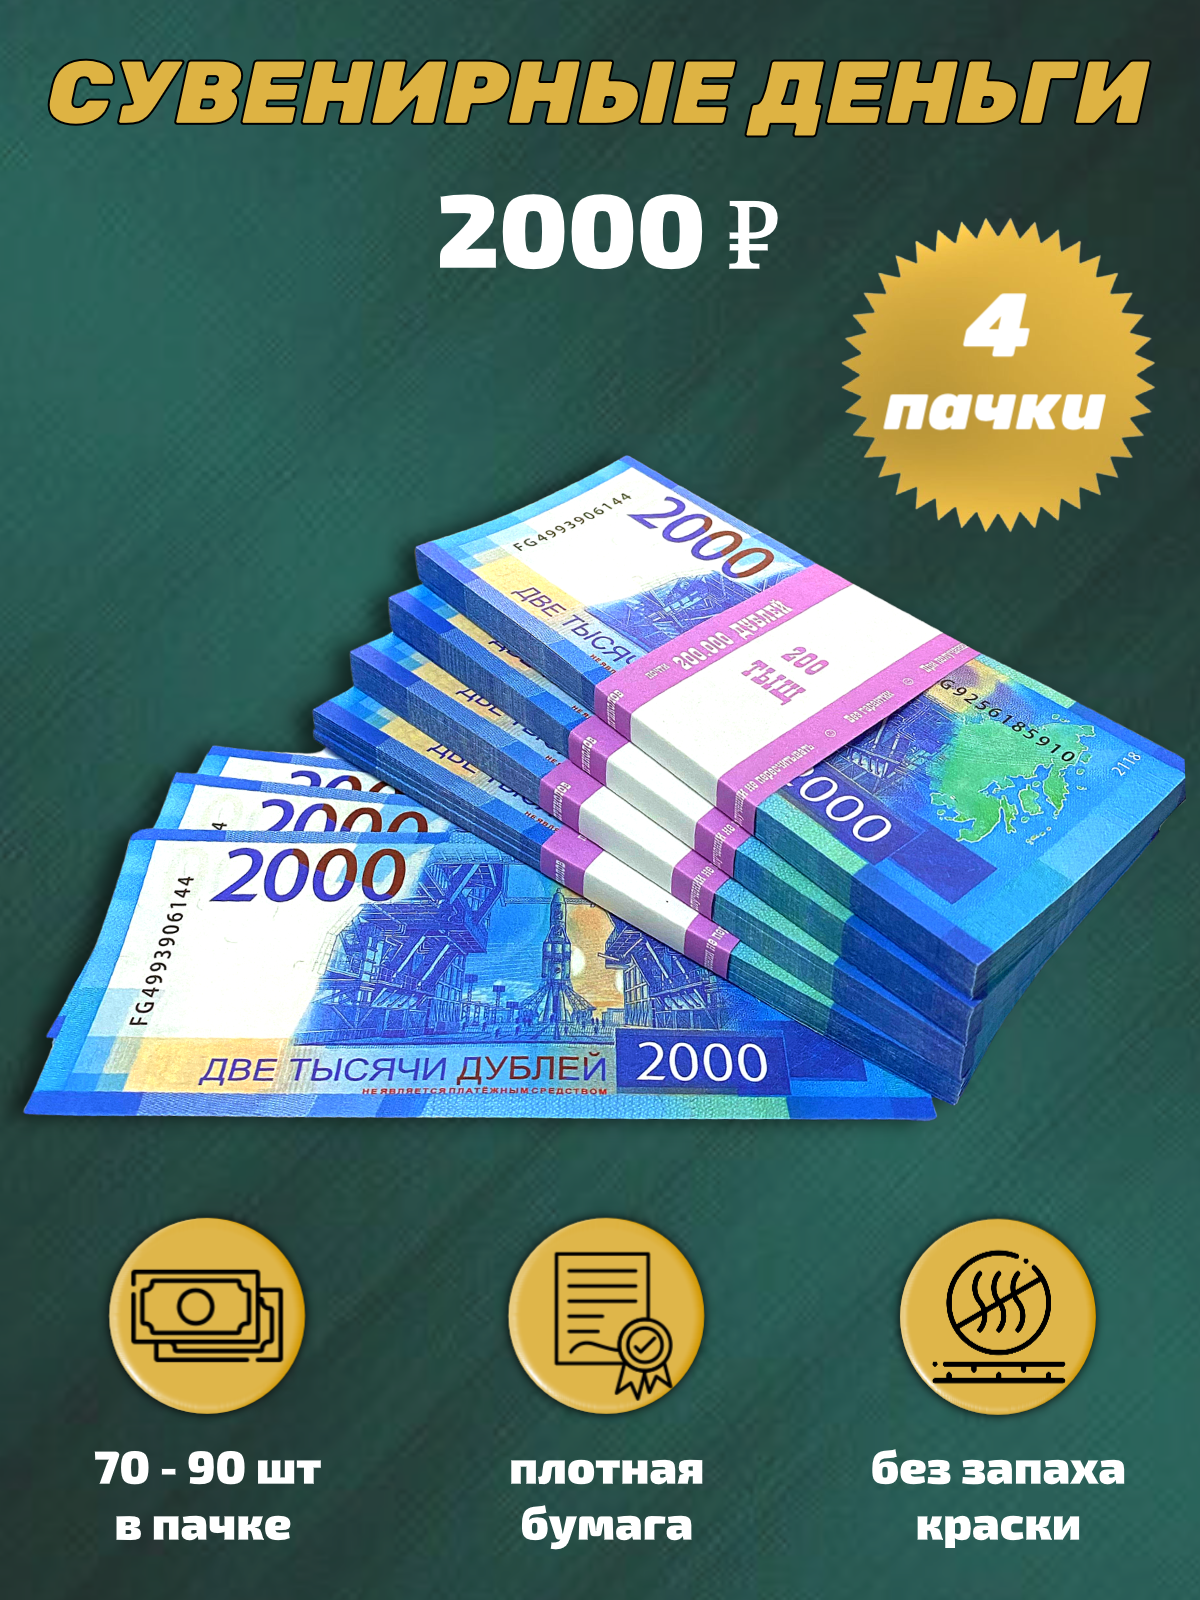 Сувенирные деньги, набор 2000 руб - 4 пачки